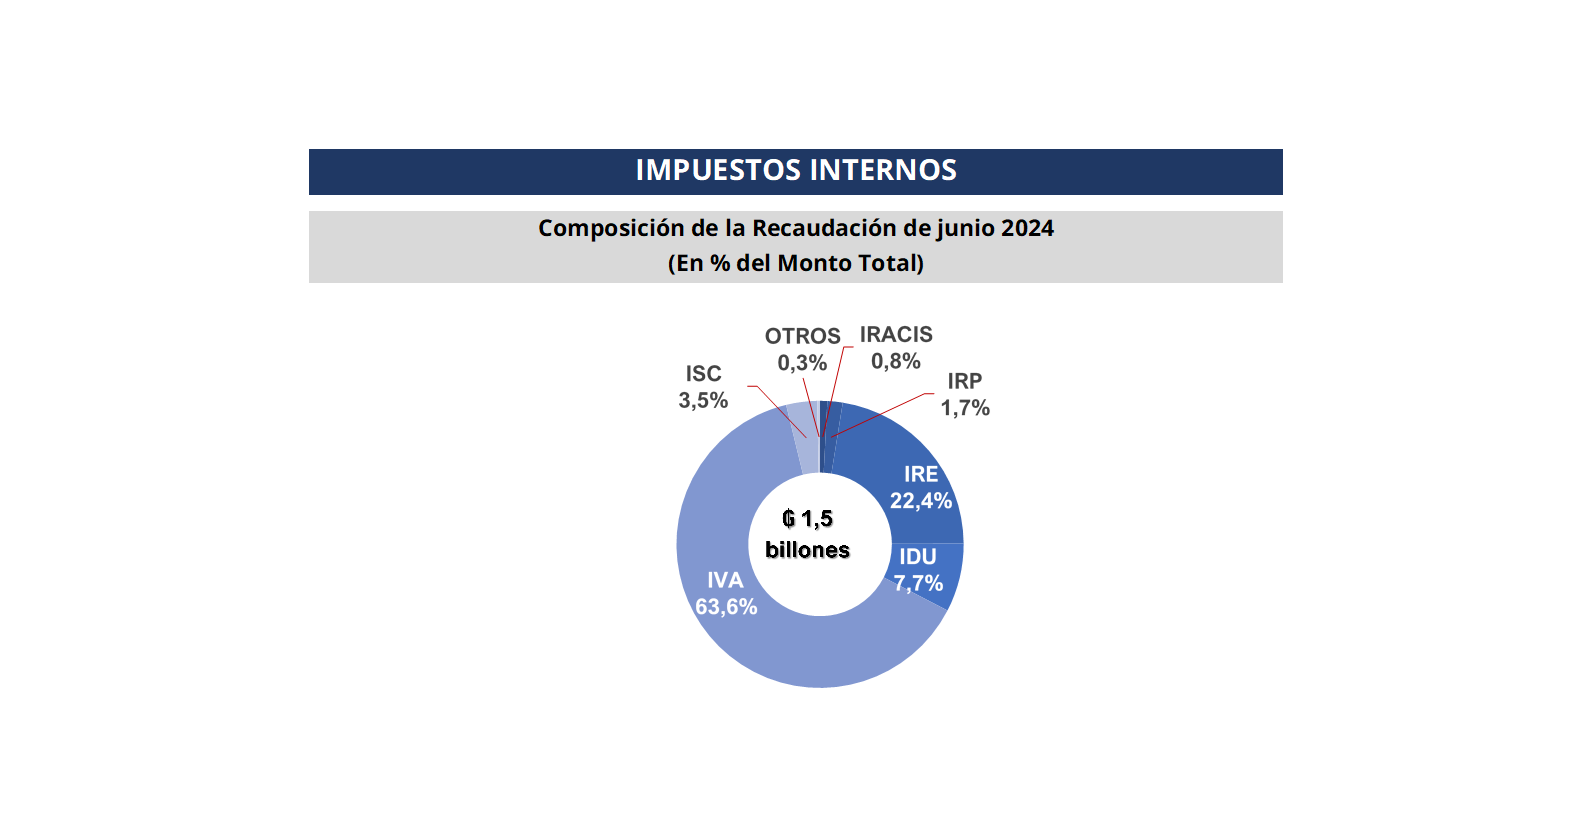 El IVA tuvo un 63,6% de participación en la composición total de la recaudación de junio